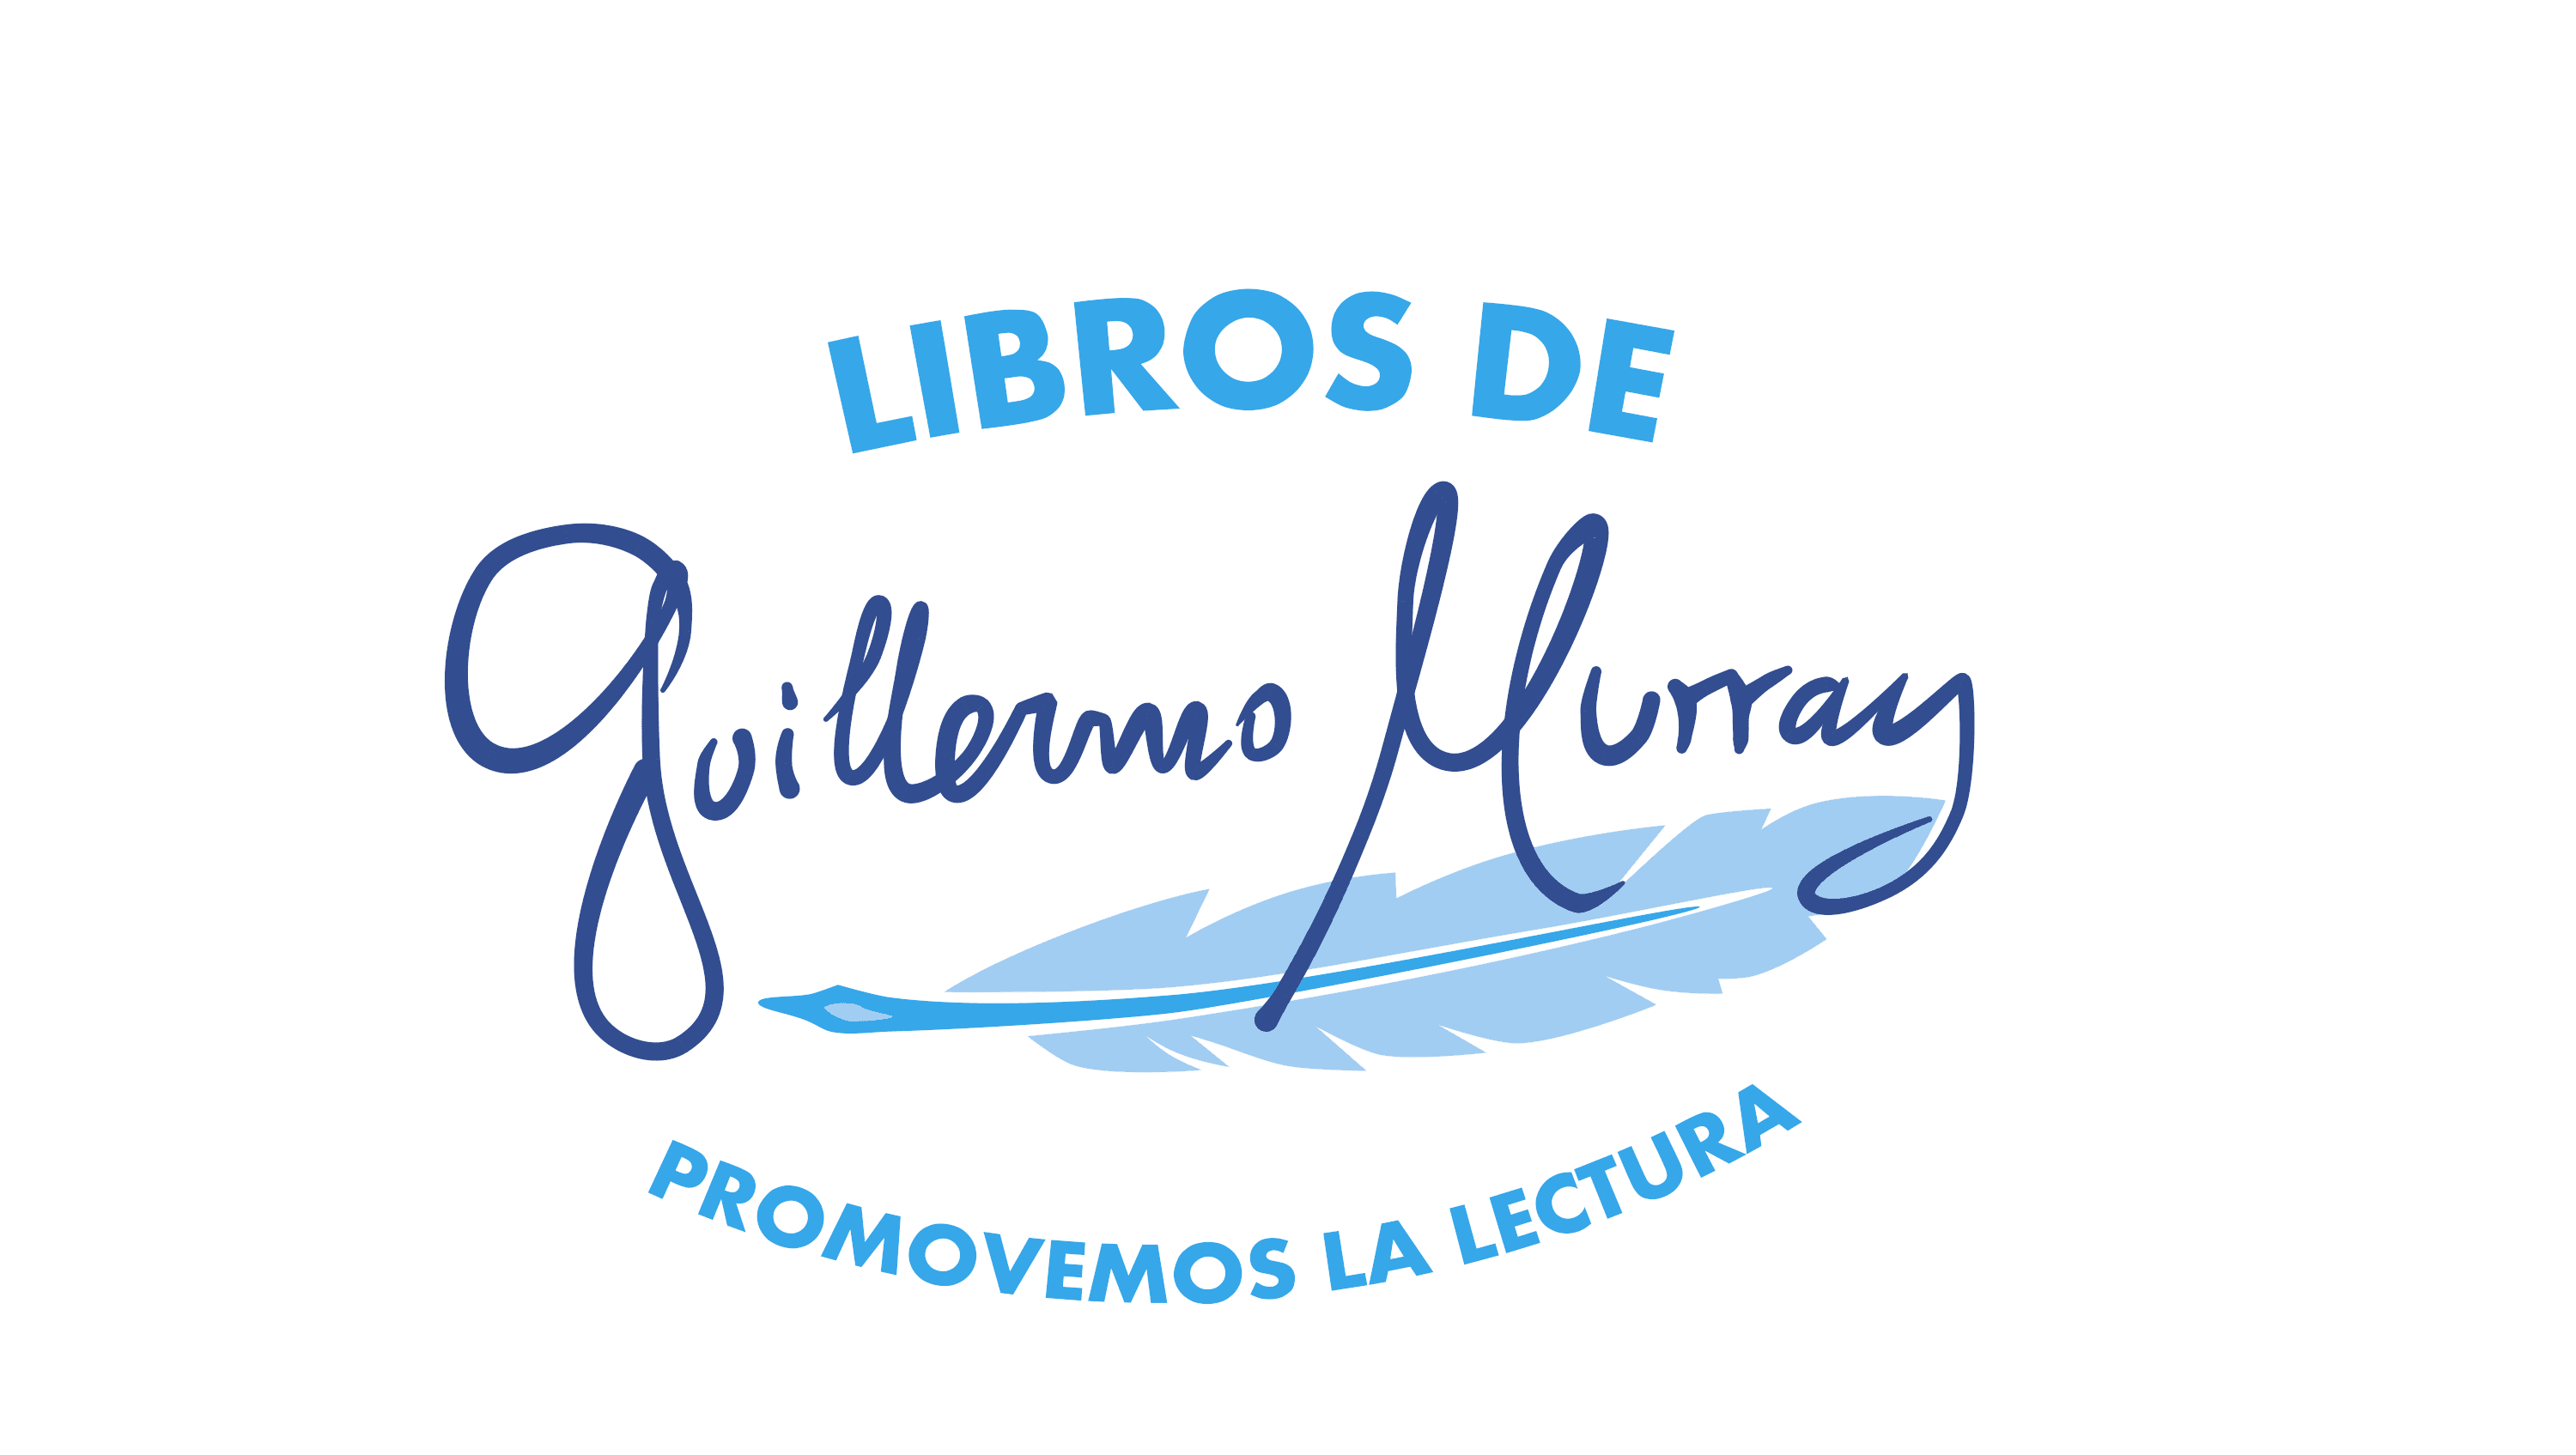 Libros De Guillermo Murray